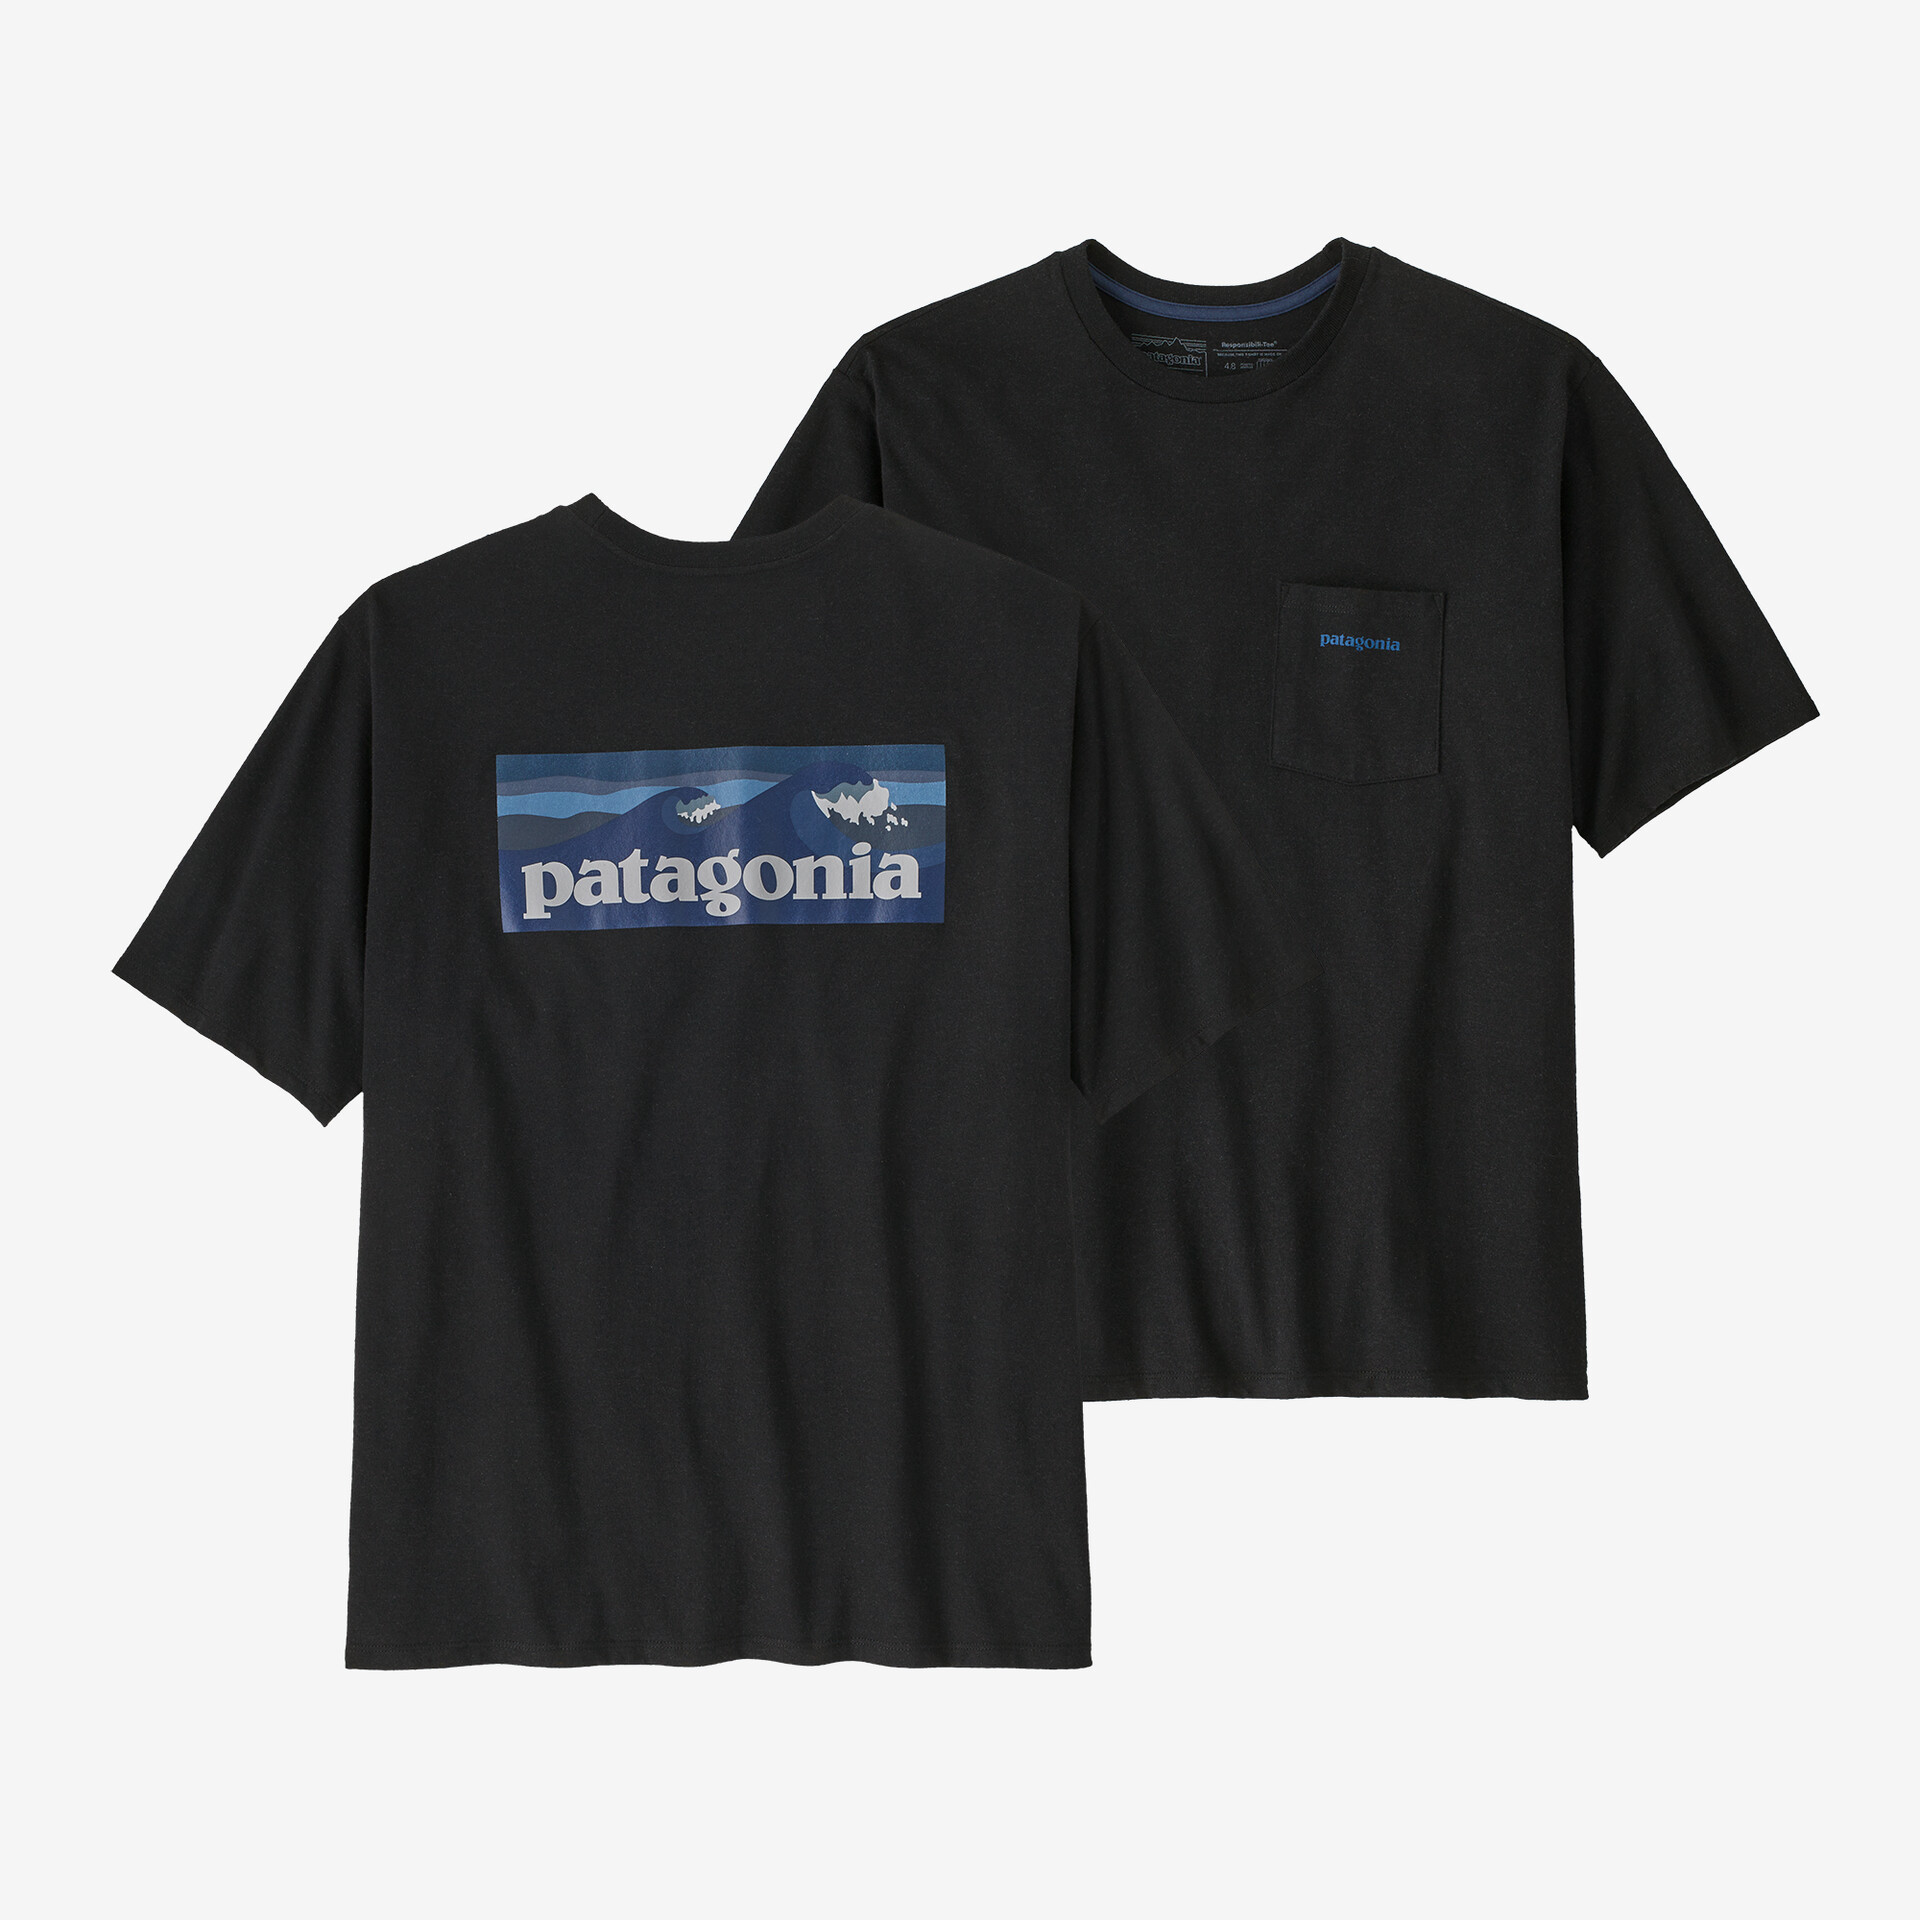 Мужская футболка с логотипом и карманом Responsibili Patagonia, черный мужская ответственная футболка с логотипом и карманом patagonia черный